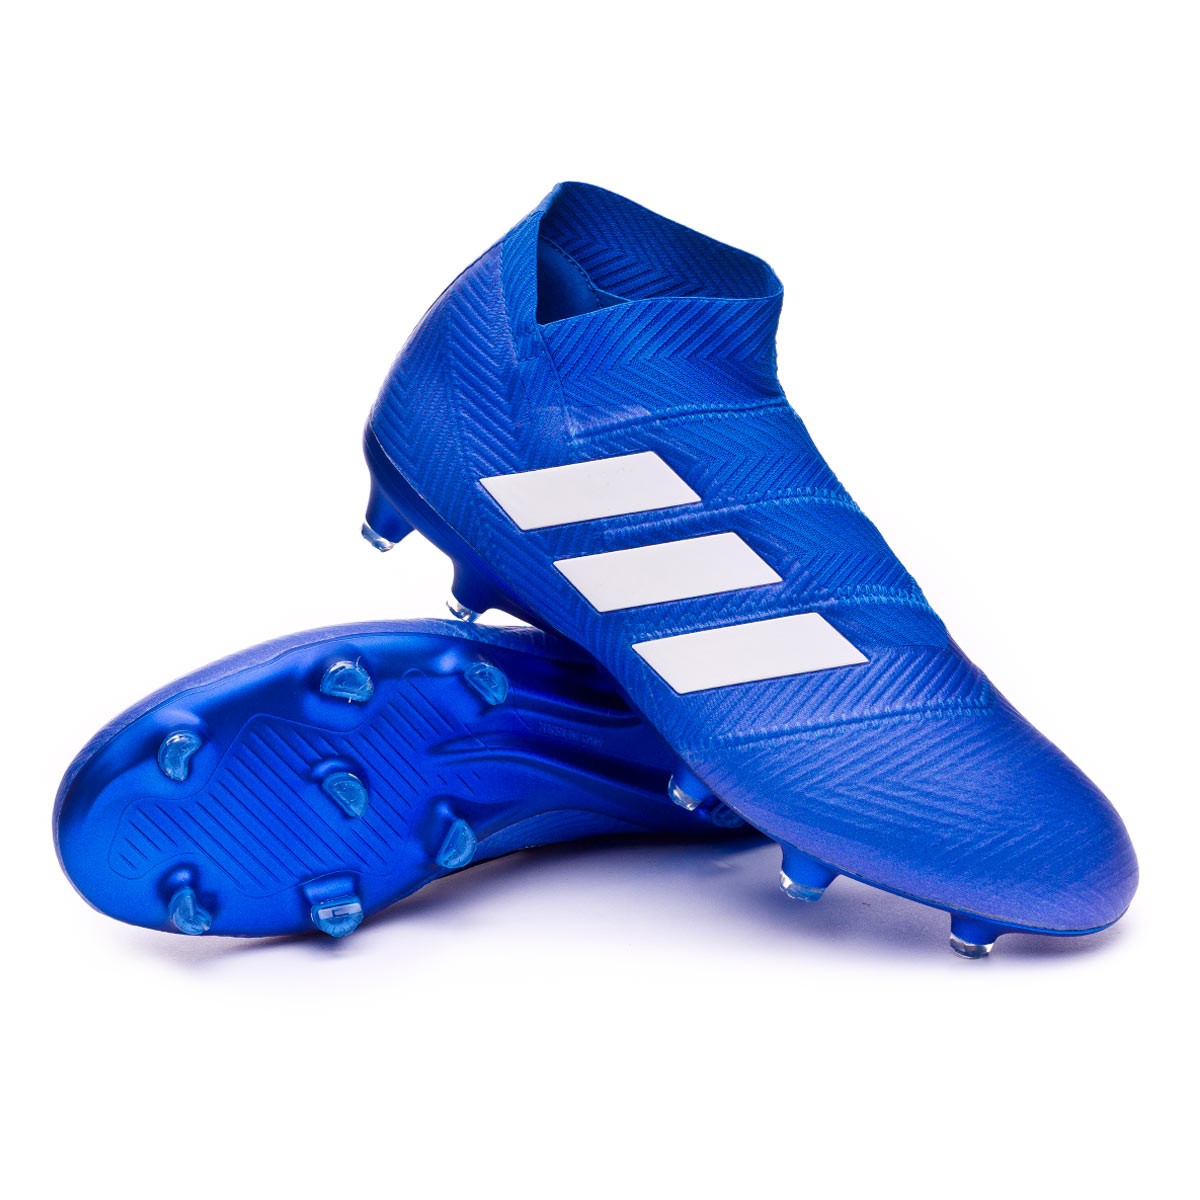 Football Boots adidas Nemeziz 18+ FG 